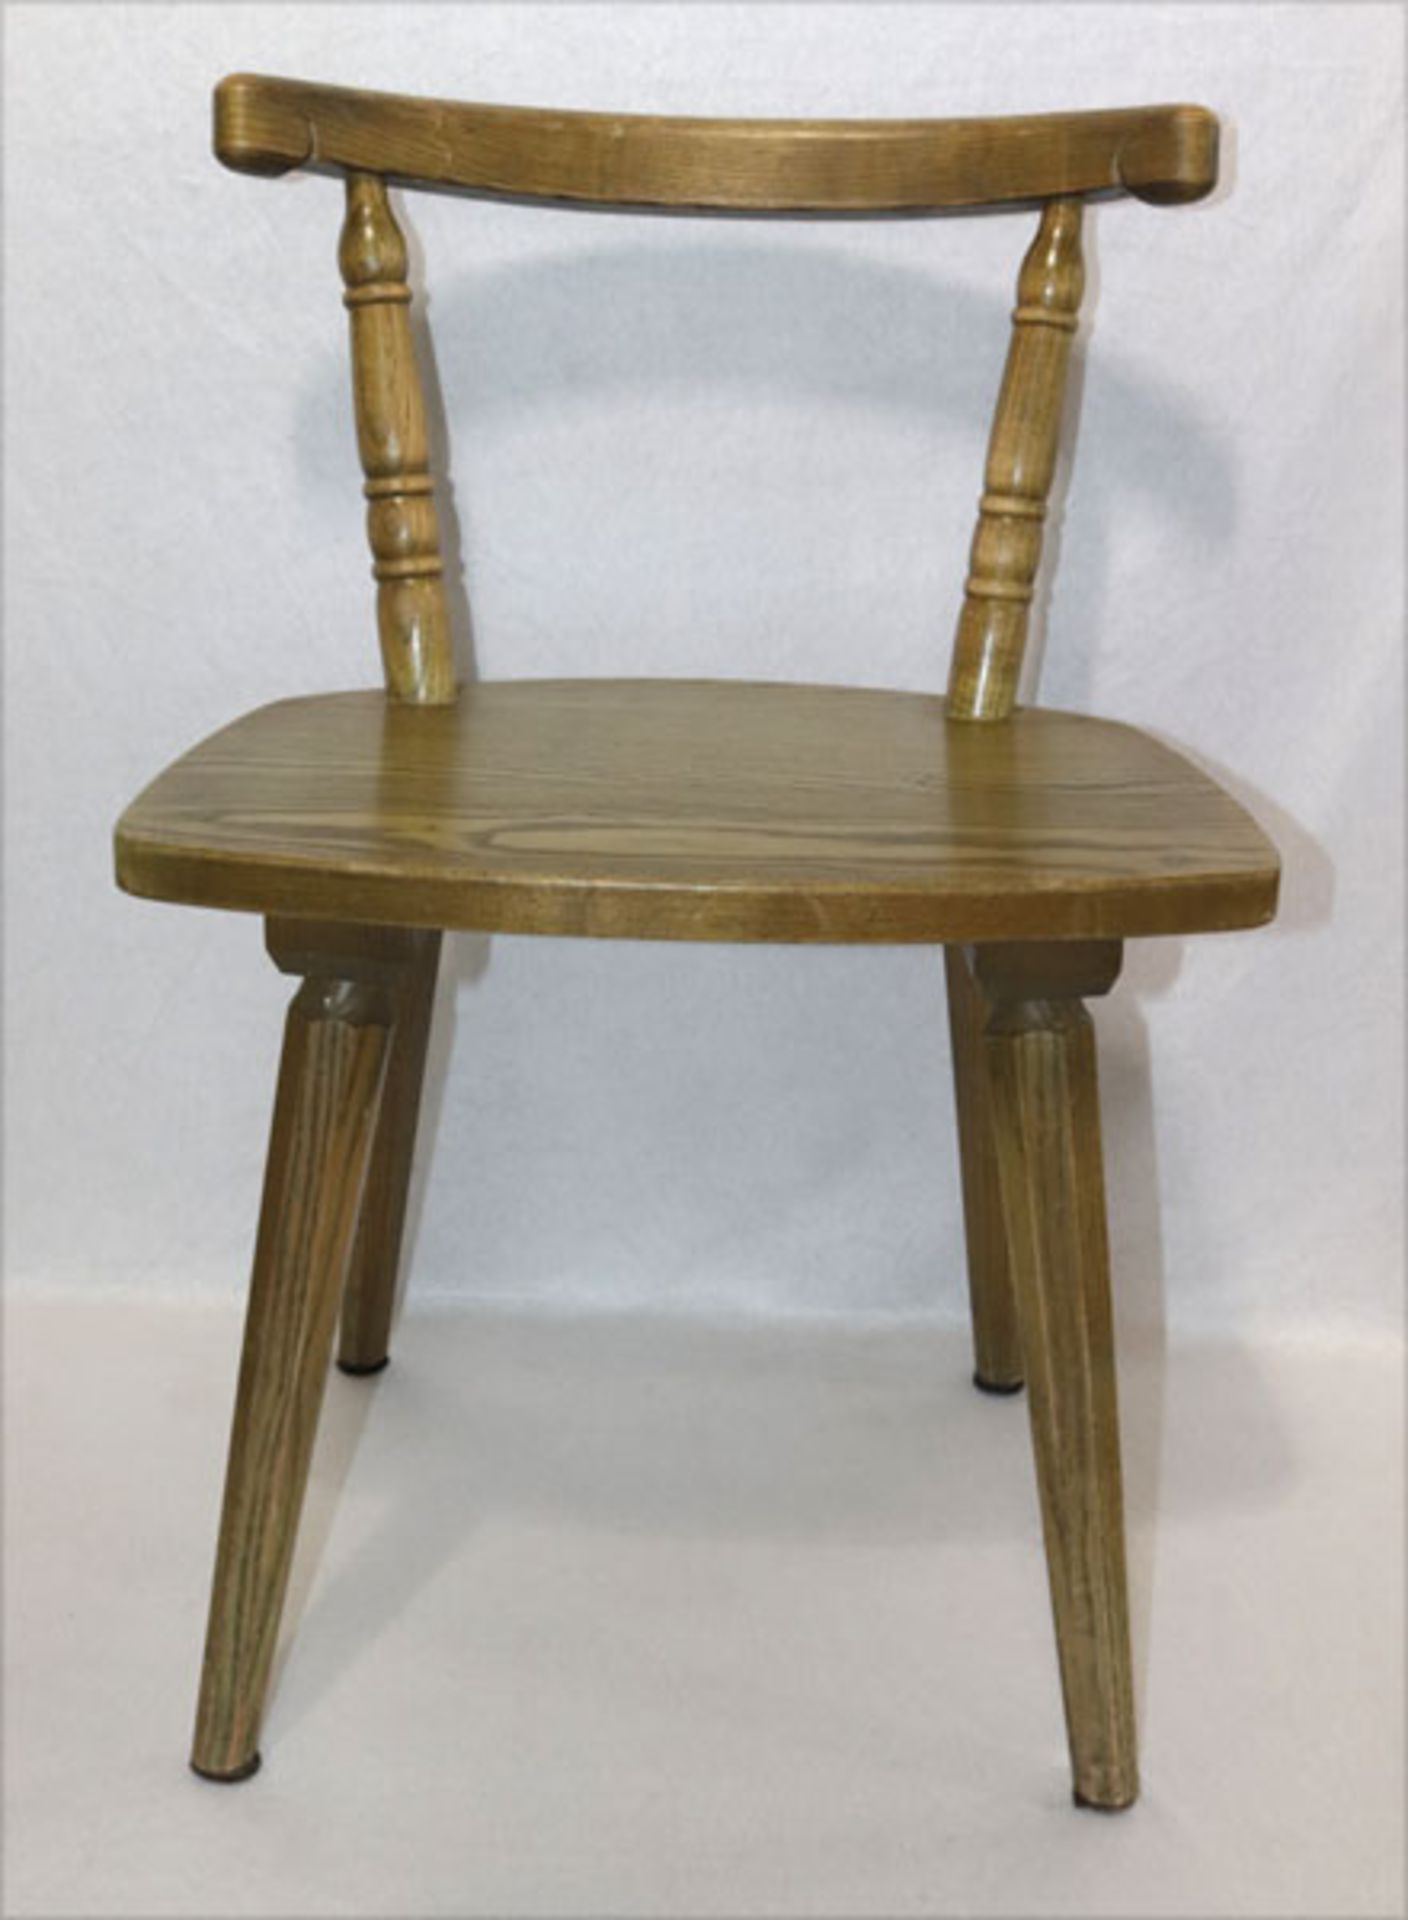 Satz von 4 Holzstühlen, grün, H 71 cm, B 48 cm, T 37 cm, Gebrauchsspuren